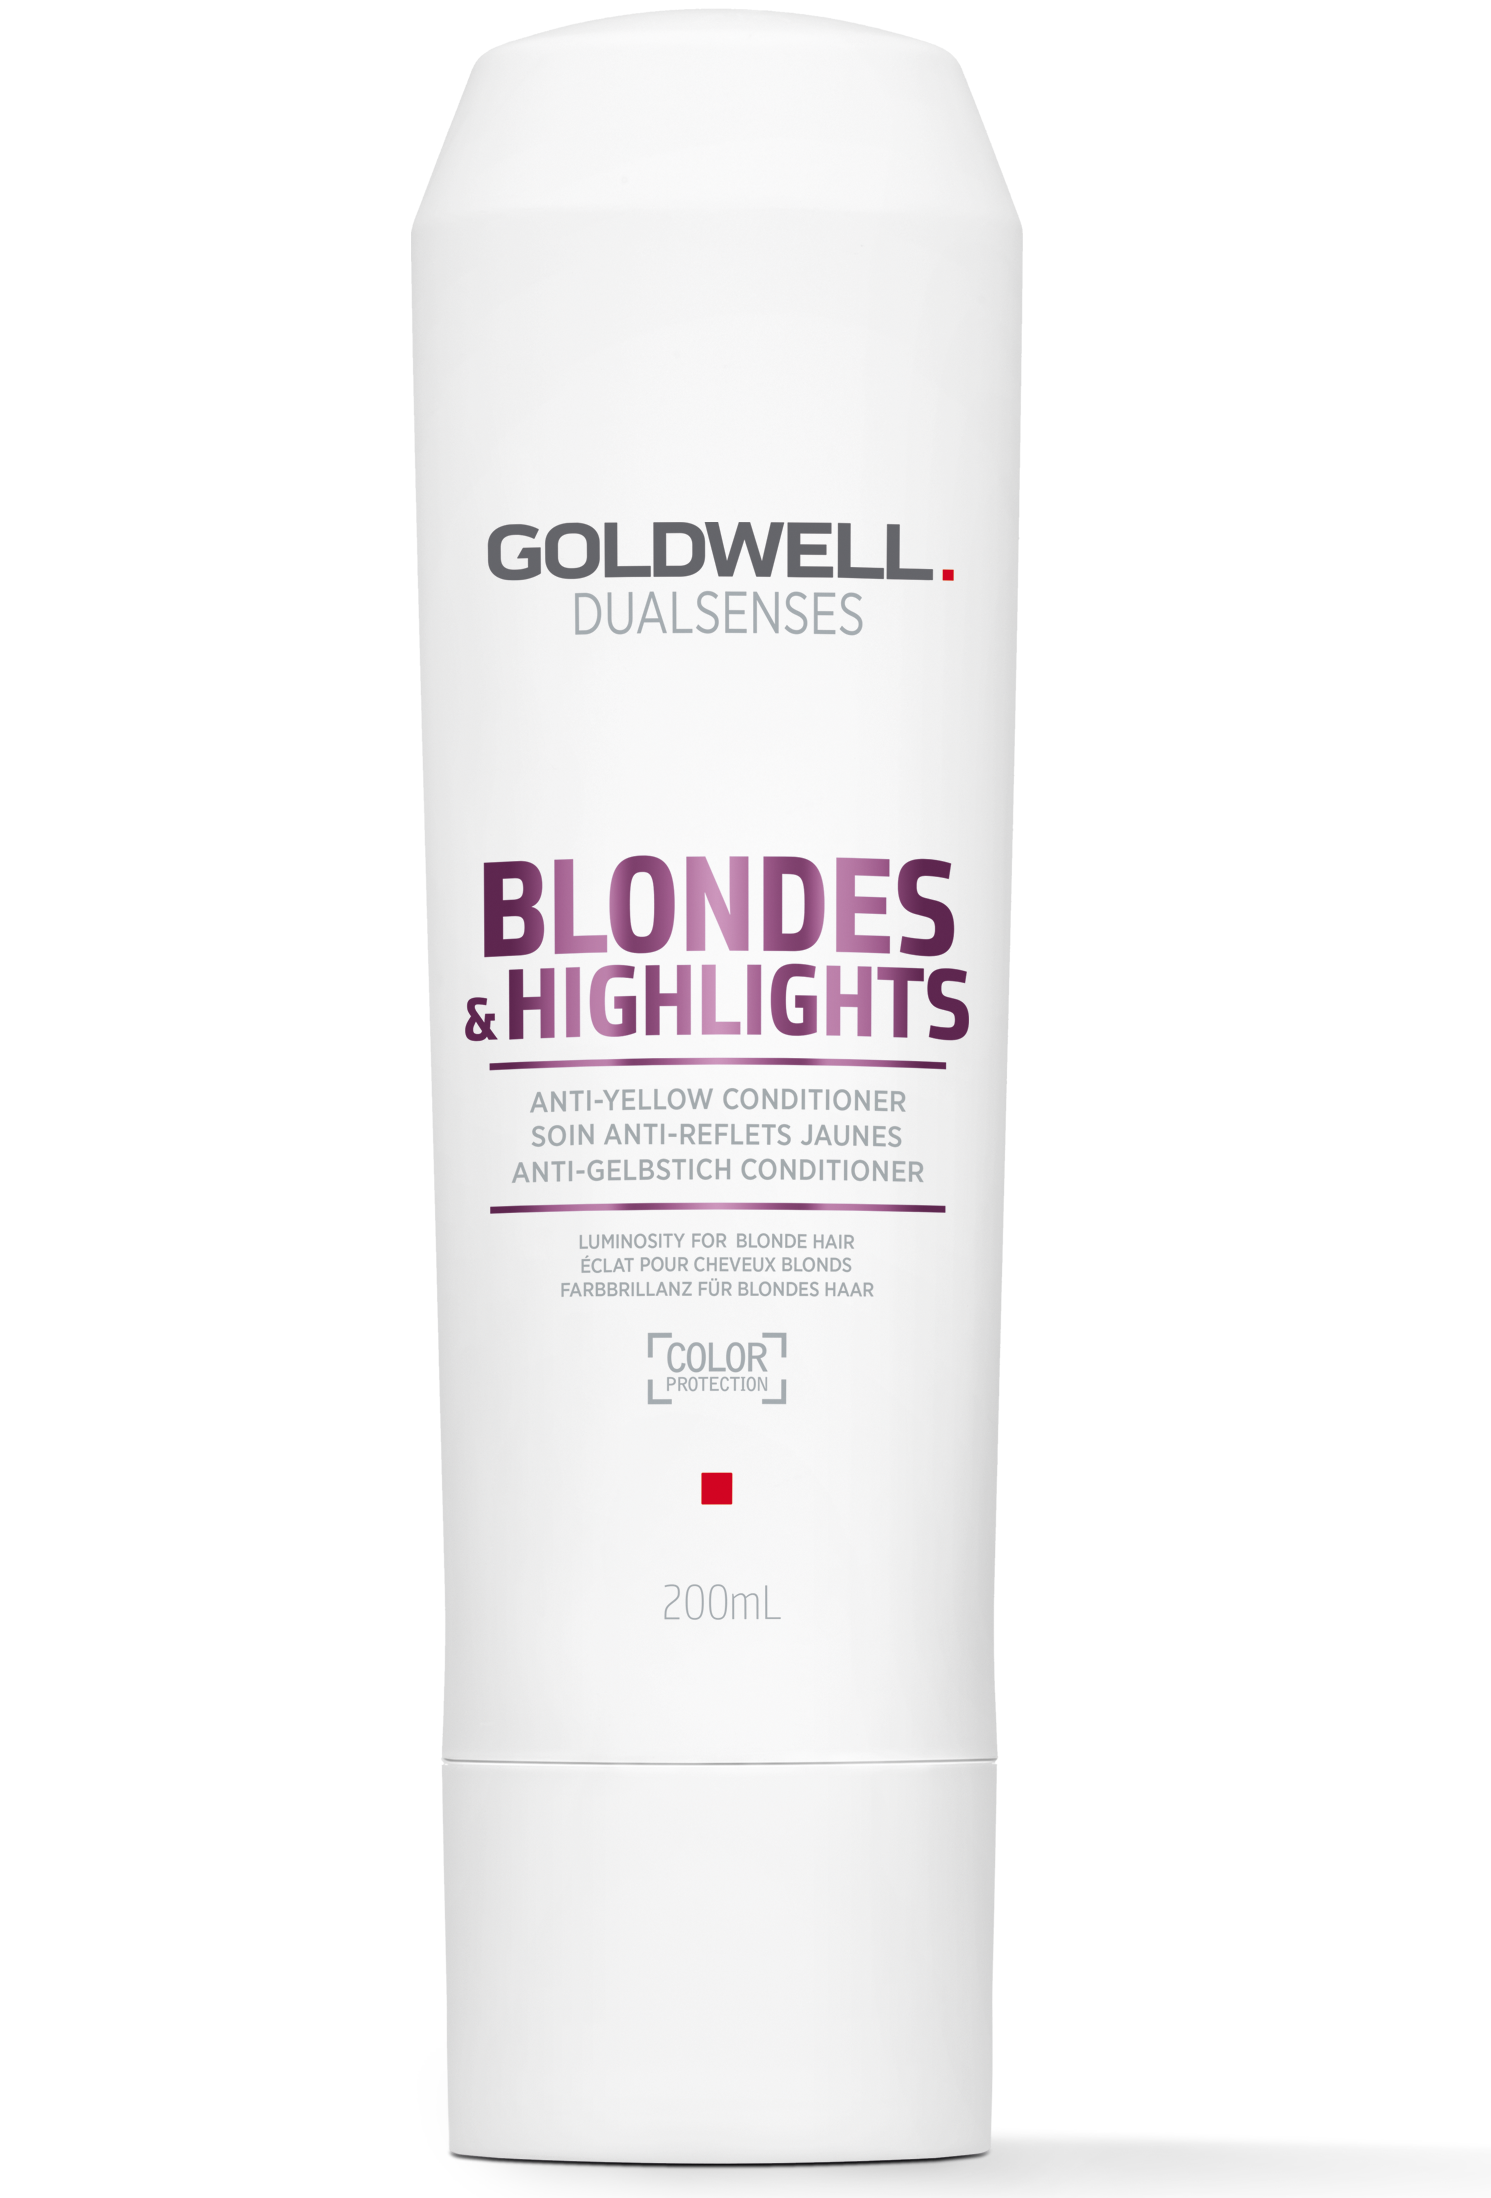 dualsenses blondes&highlights odżywka neutralizująca do włosów blond